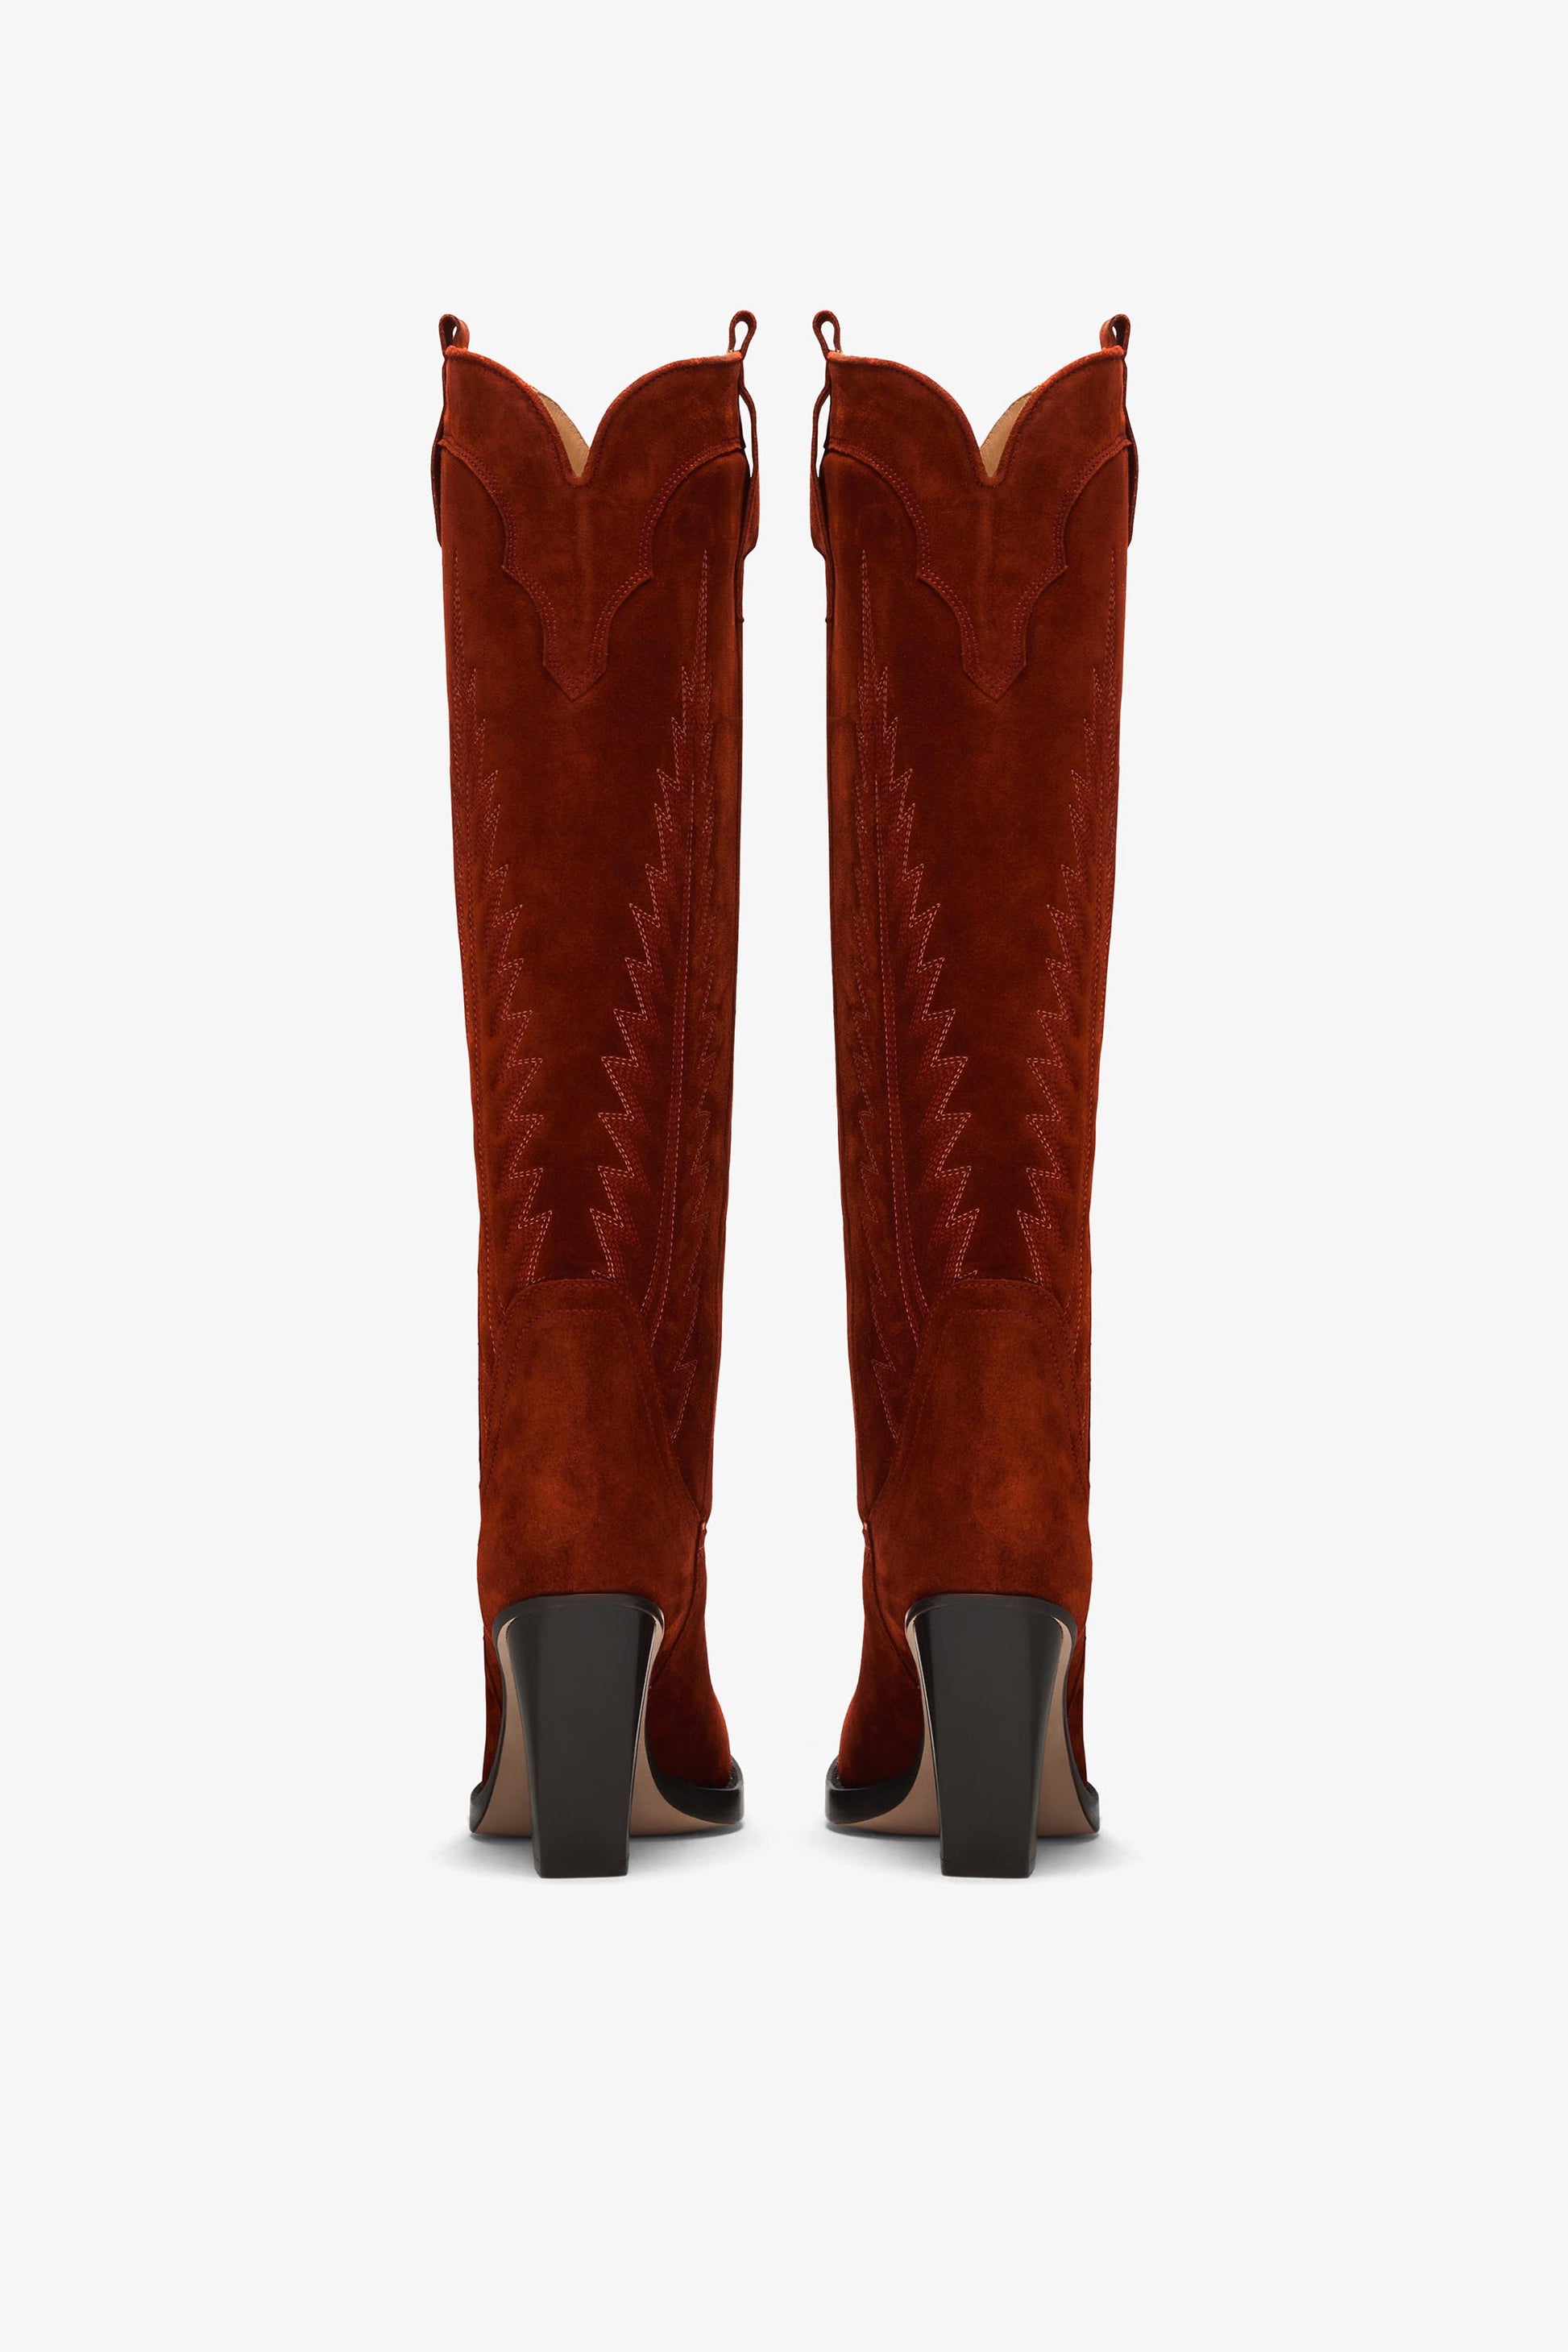 Texanische Stiefel aus besticktem Veloursleder in der Farbe Rost